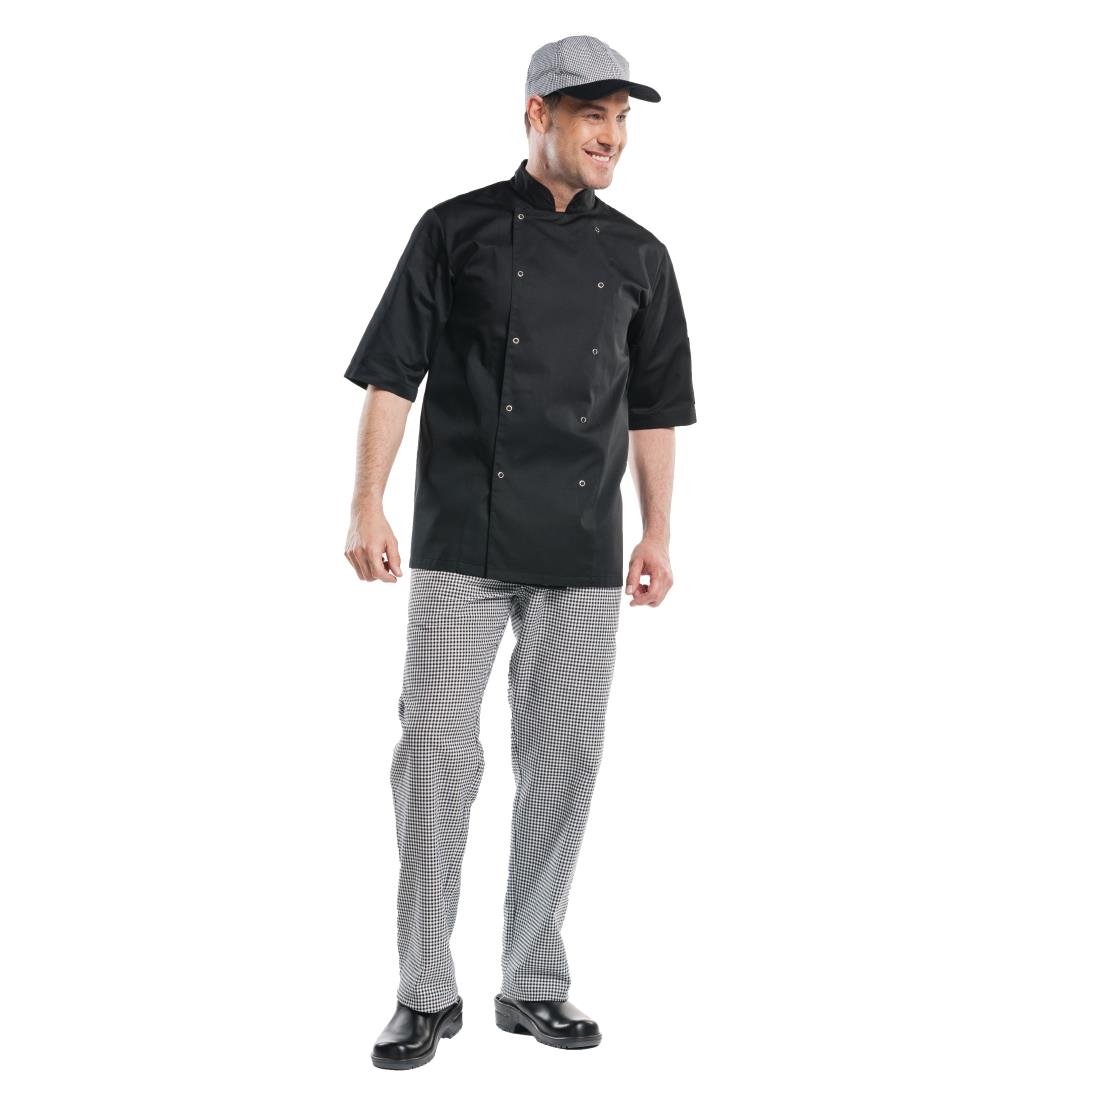 Veste de cuisine mixte Chaud Devant Hilton Poco manches courtes noire XS